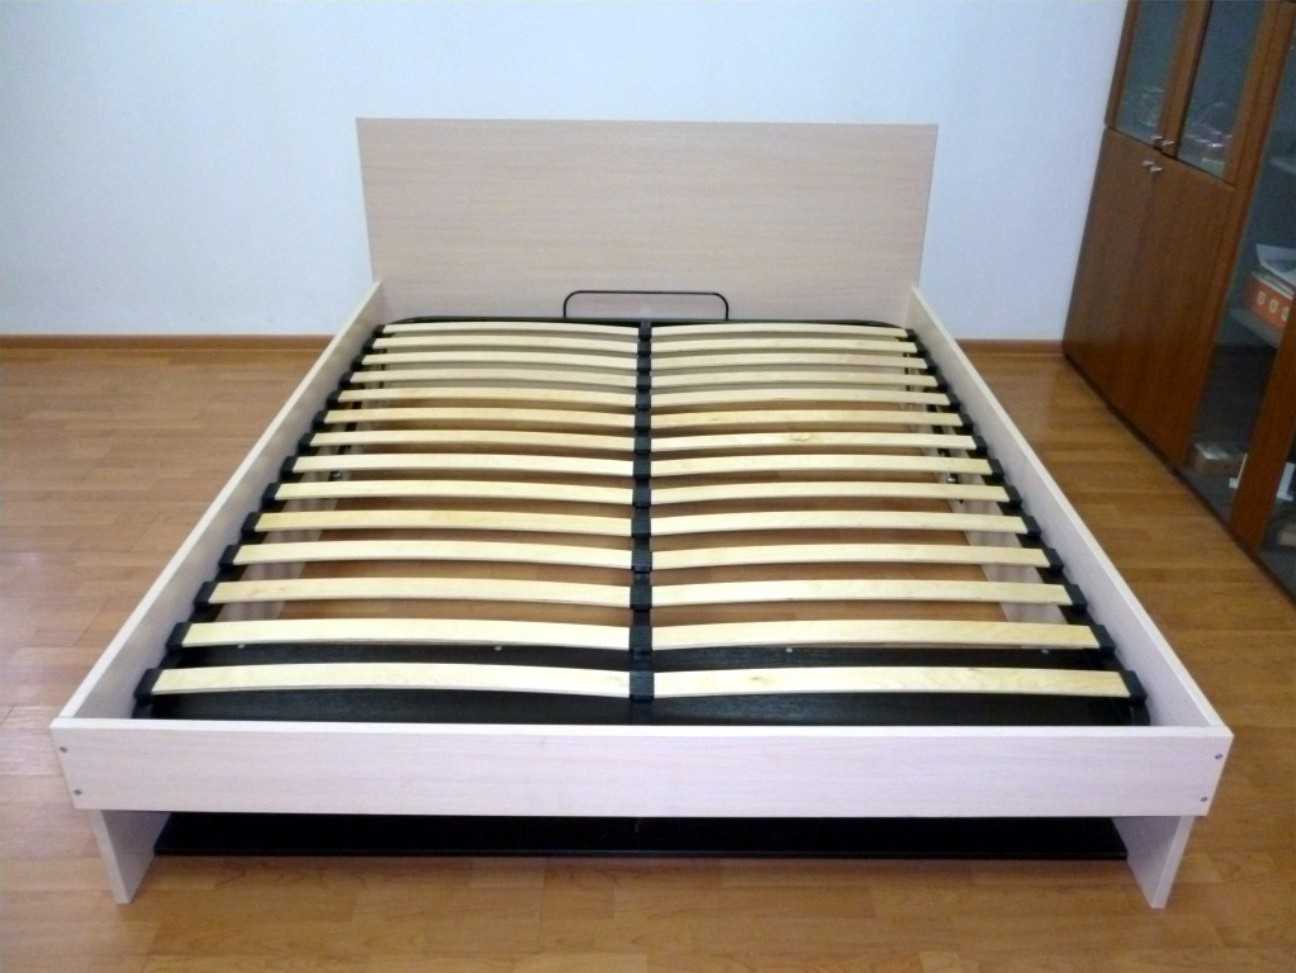 Пошаговая инструкция, как собрать двуспальную кровать и избежать ошибок